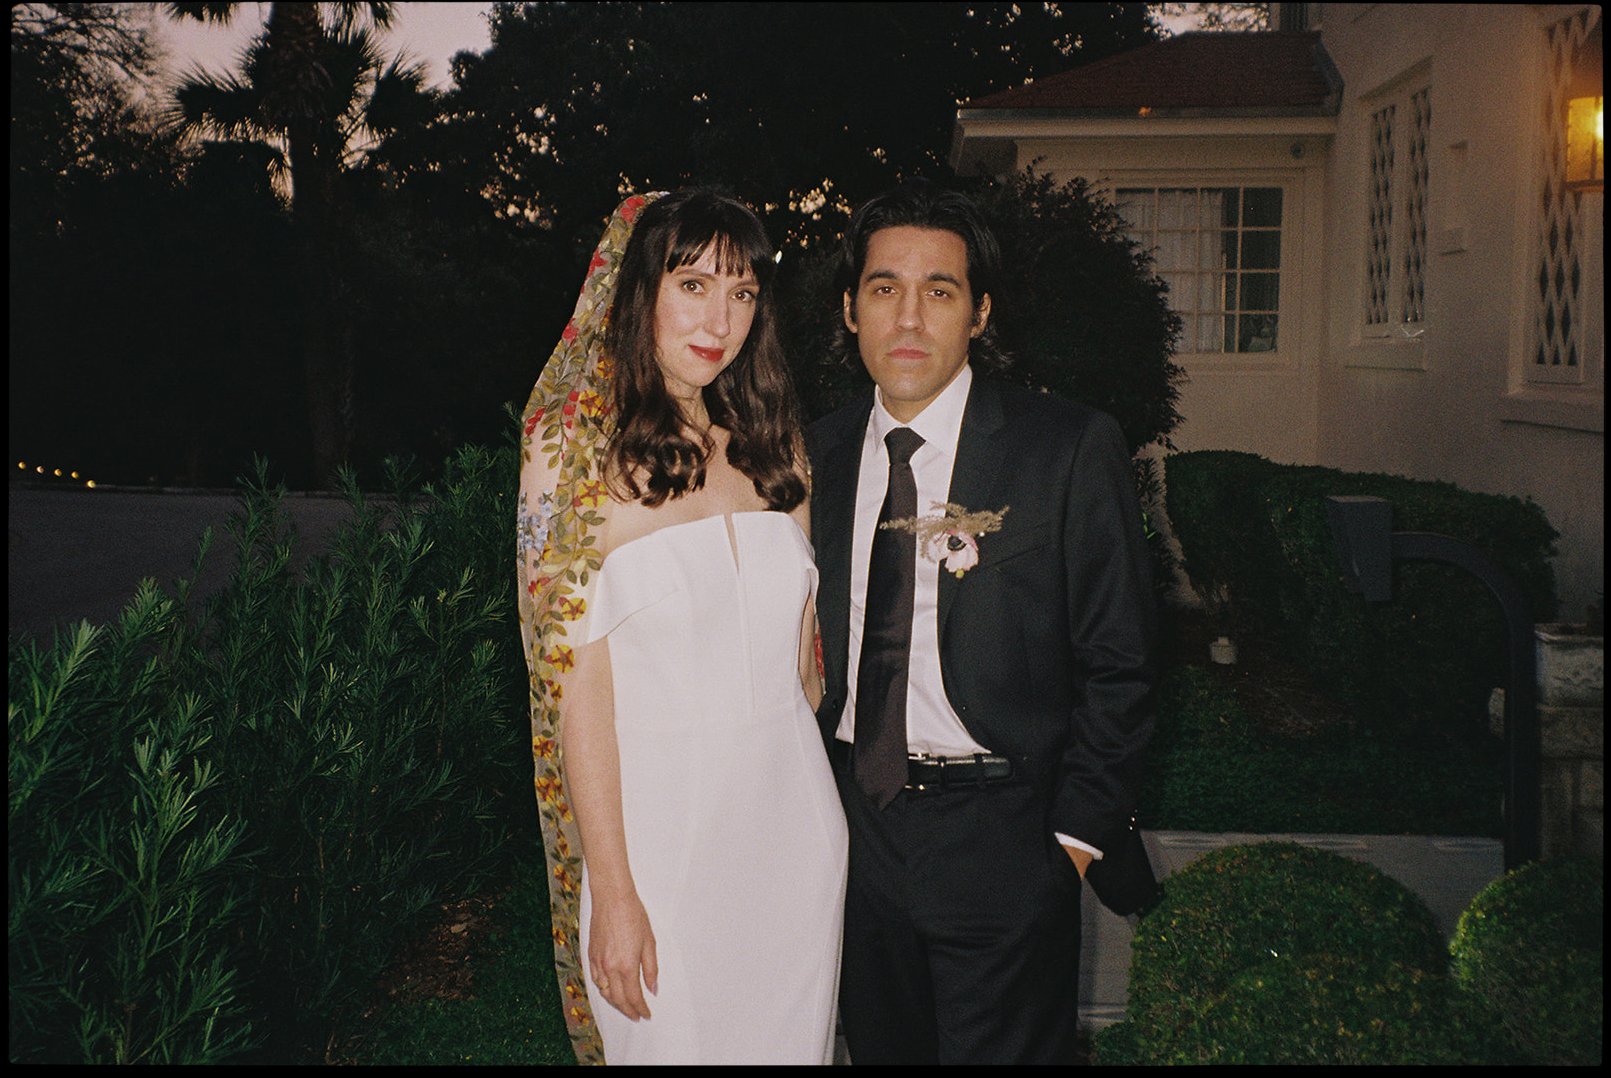 Best-Austin-Wedding-Photographers-Elopement-Film-35mm-Asheville-Santa-Barbara-Laguna-Gloria-87.jpg